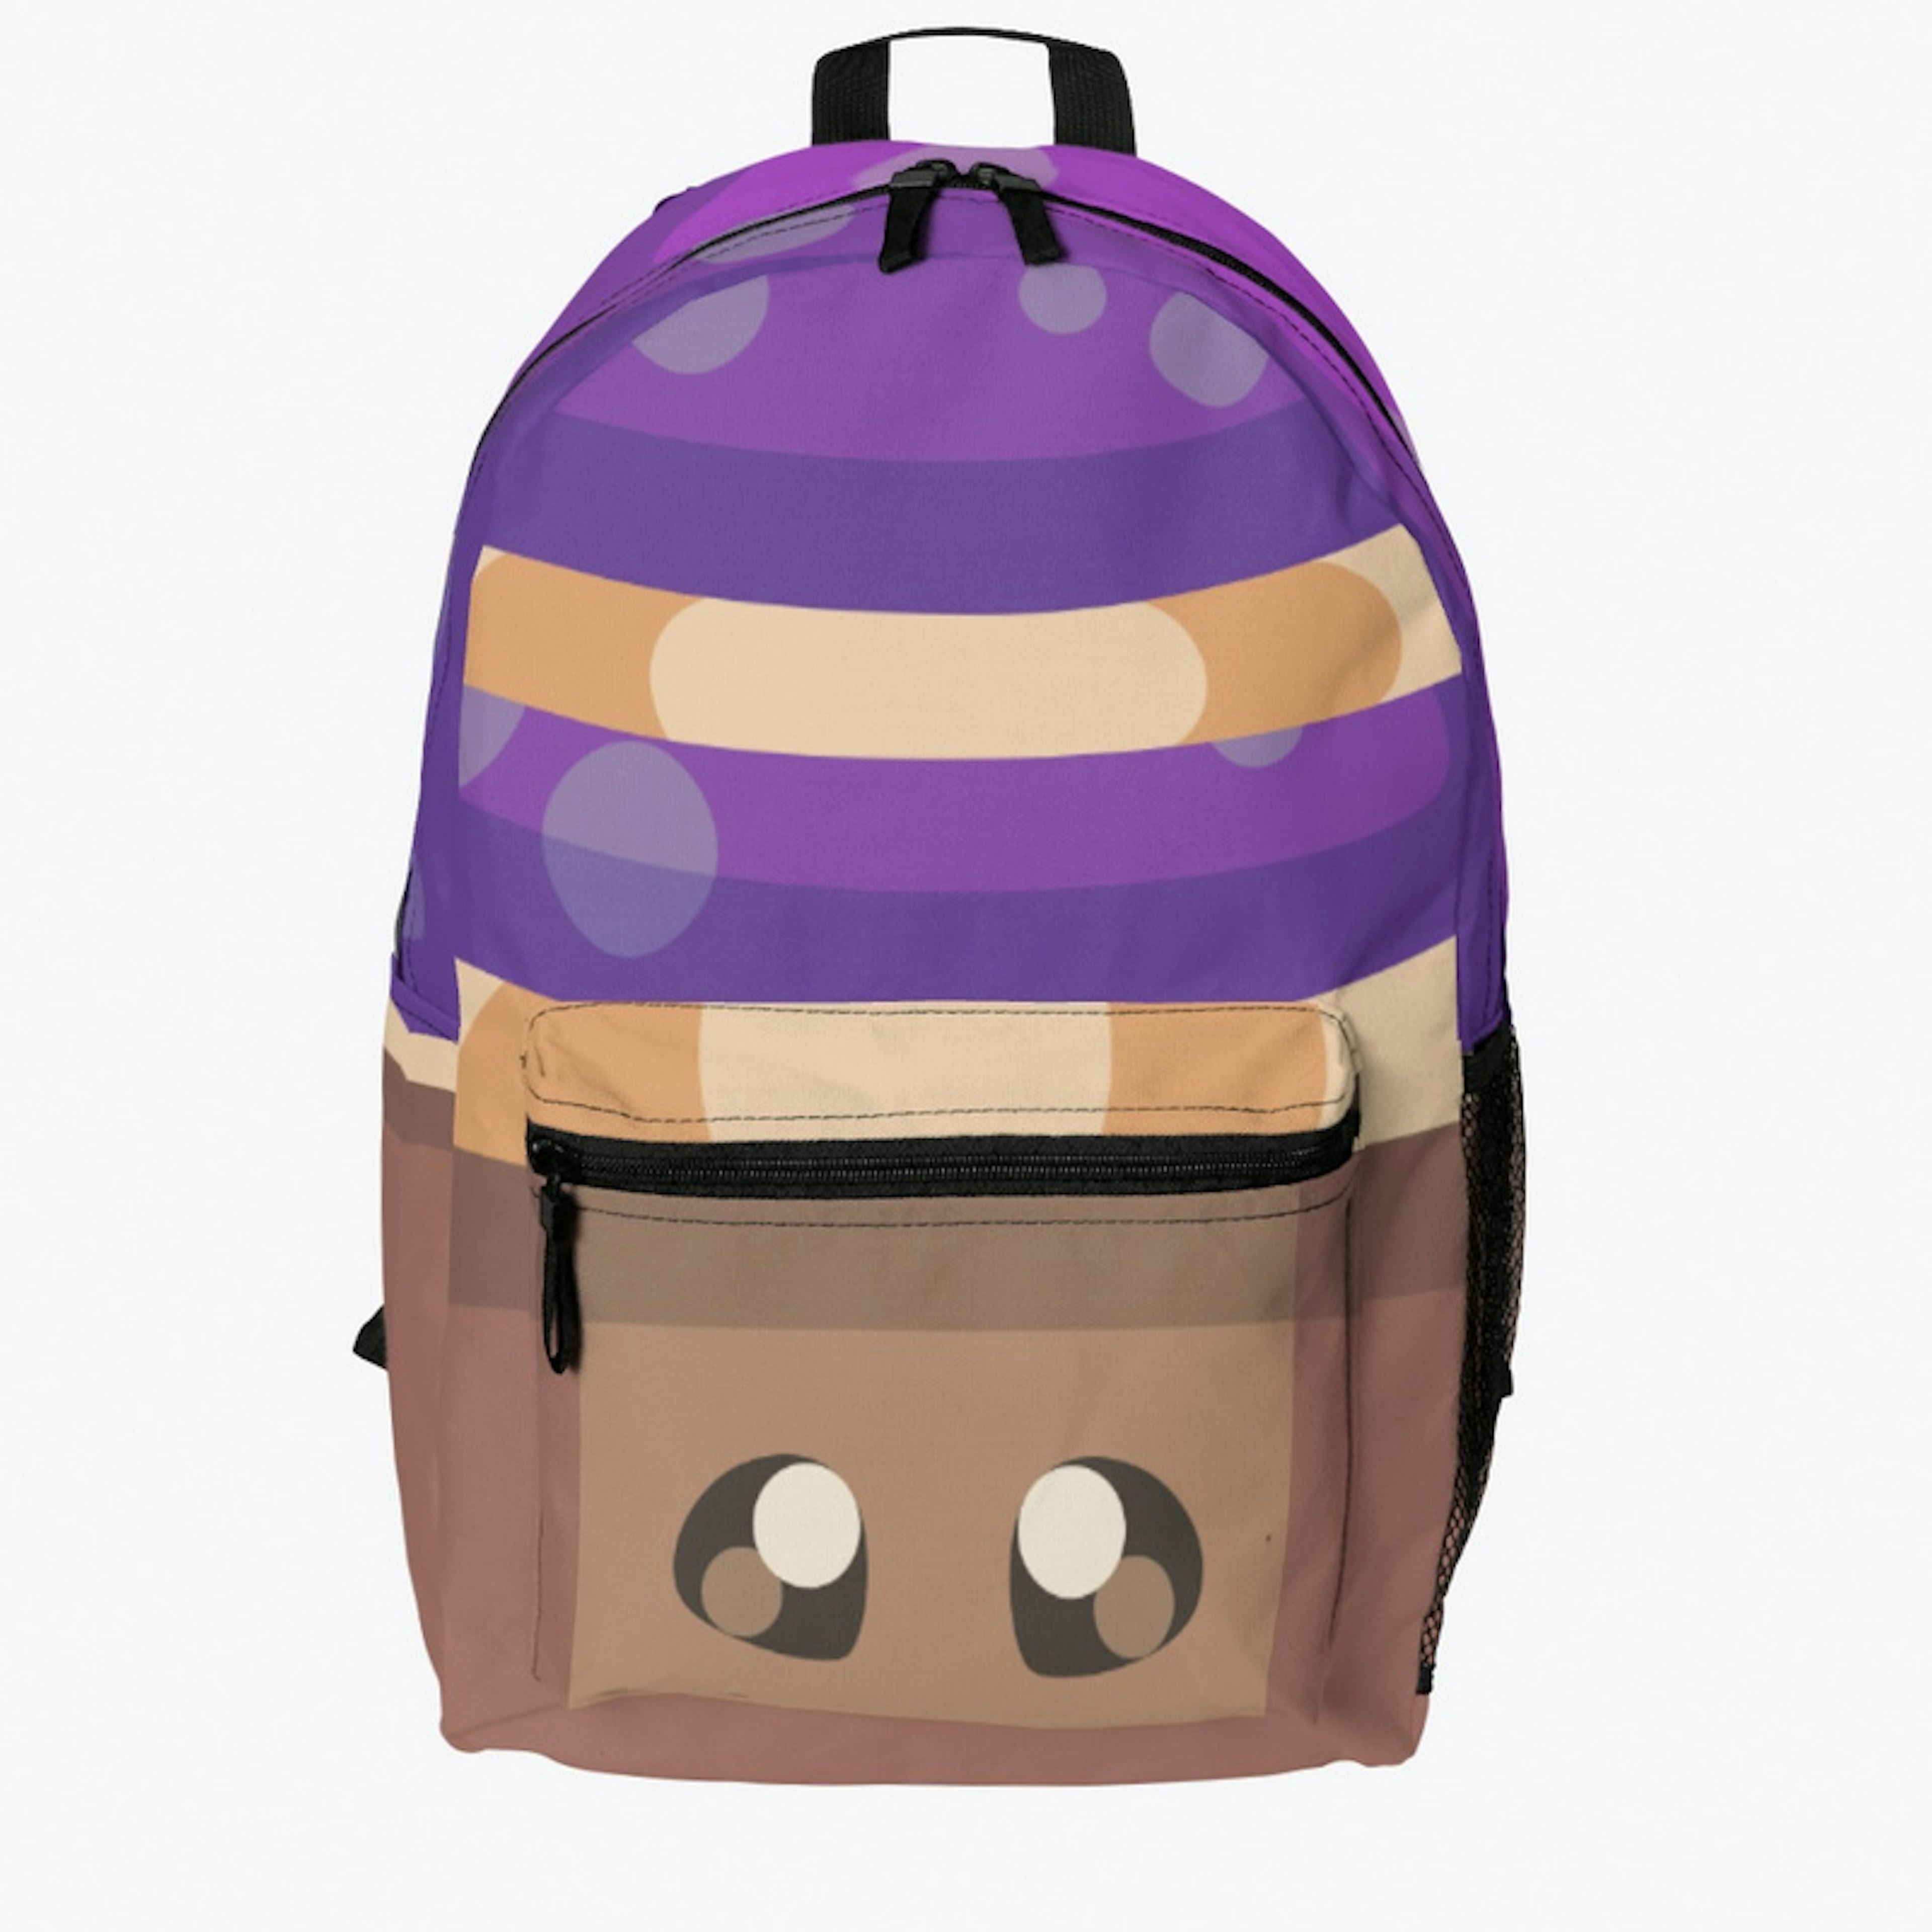 Mushroom Backpack